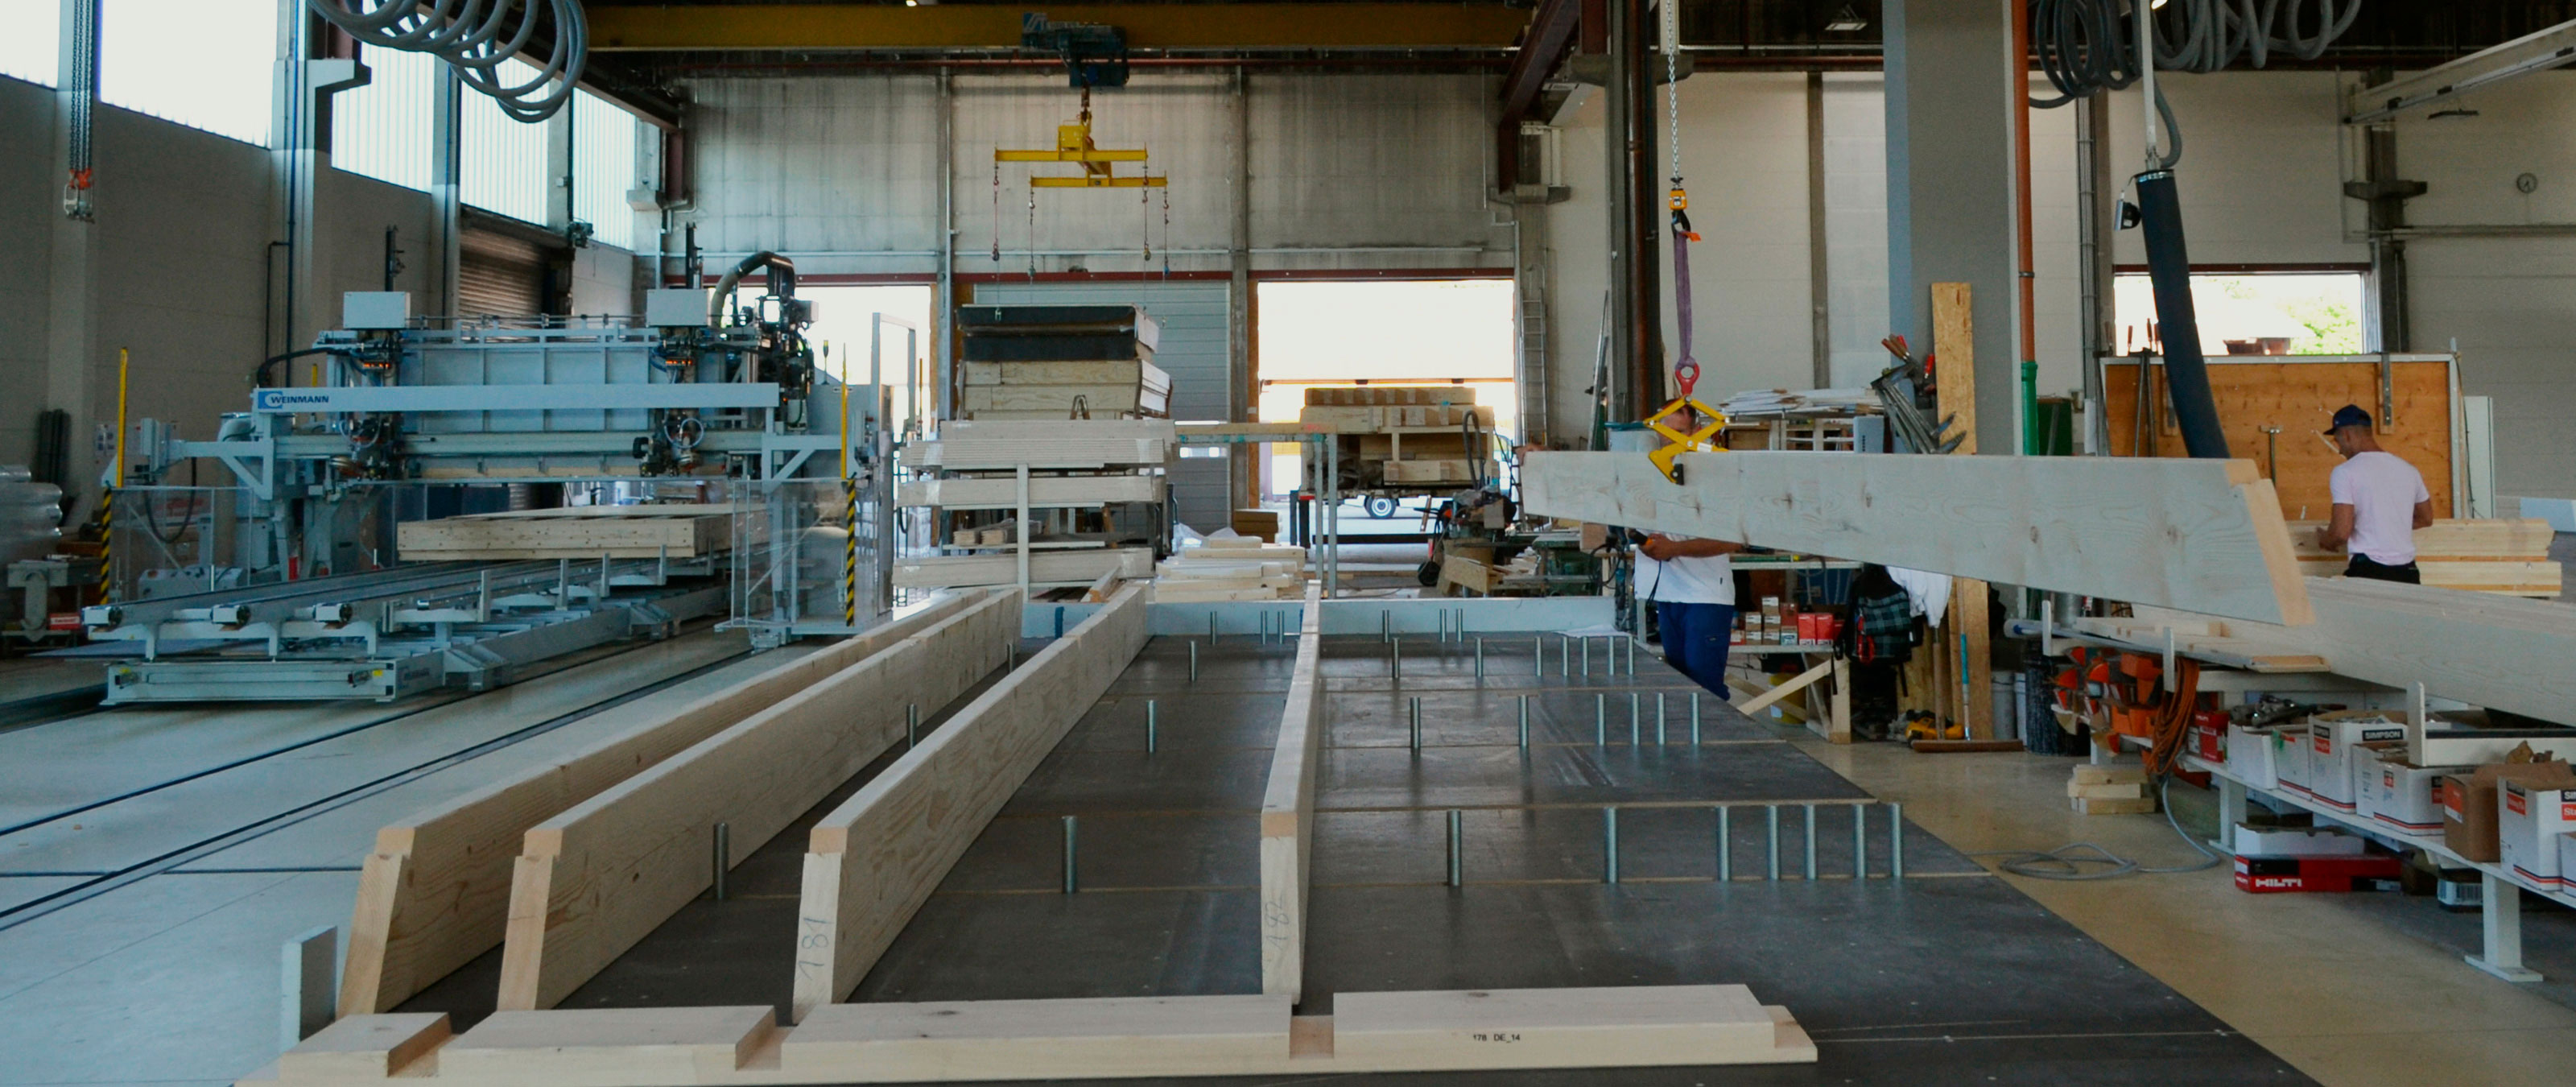 WEINMANN produktionslinje til tag og loft til præfabrikerede huse med sømbroer og elementkonstruktionsborde